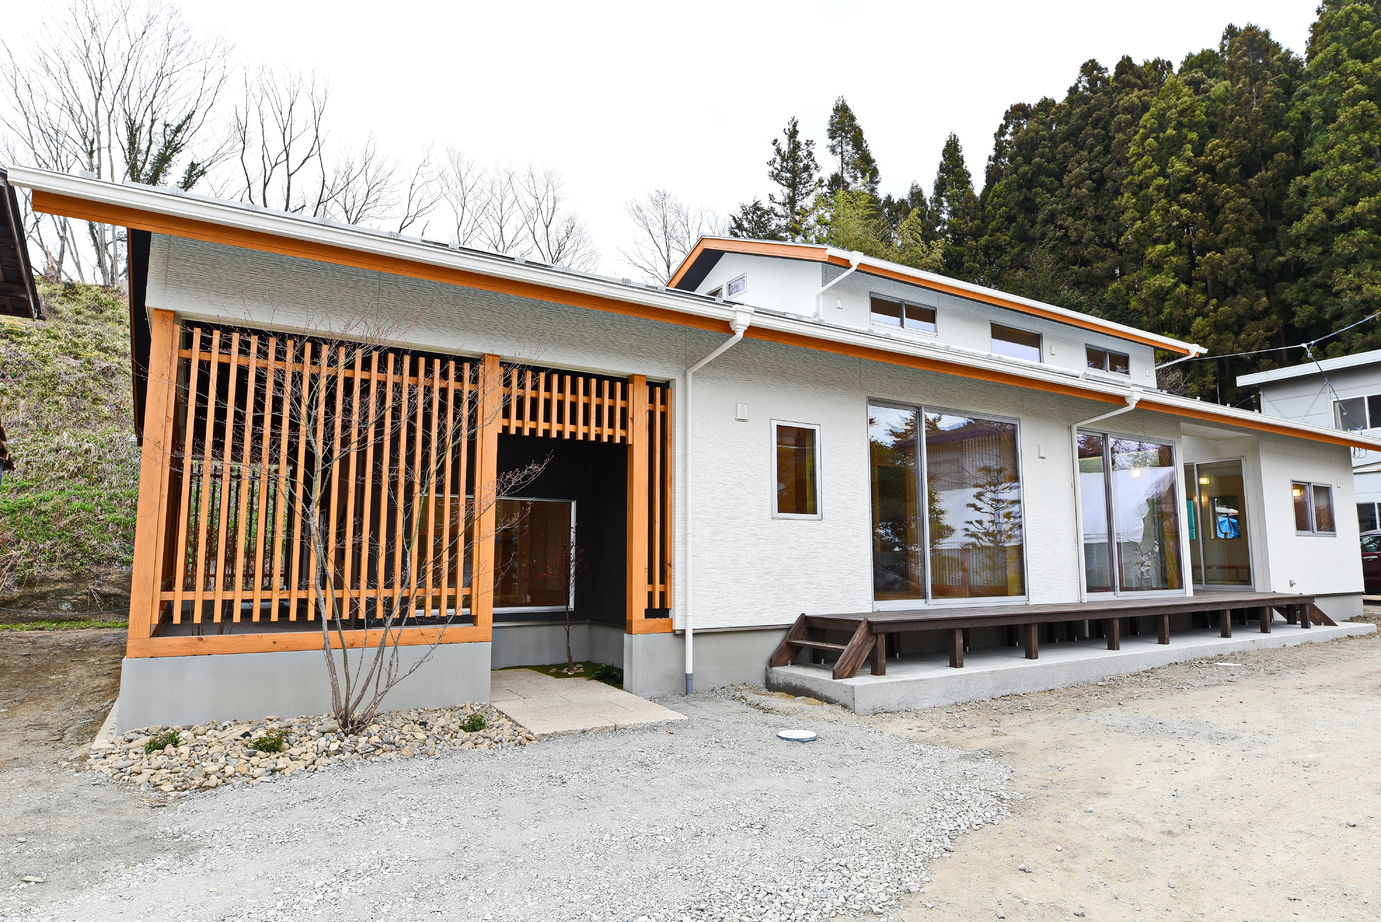 Suumo 旅館みたいな3世帯住宅 高橋材木店 タカハシホーム の建築実例詳細 注文住宅